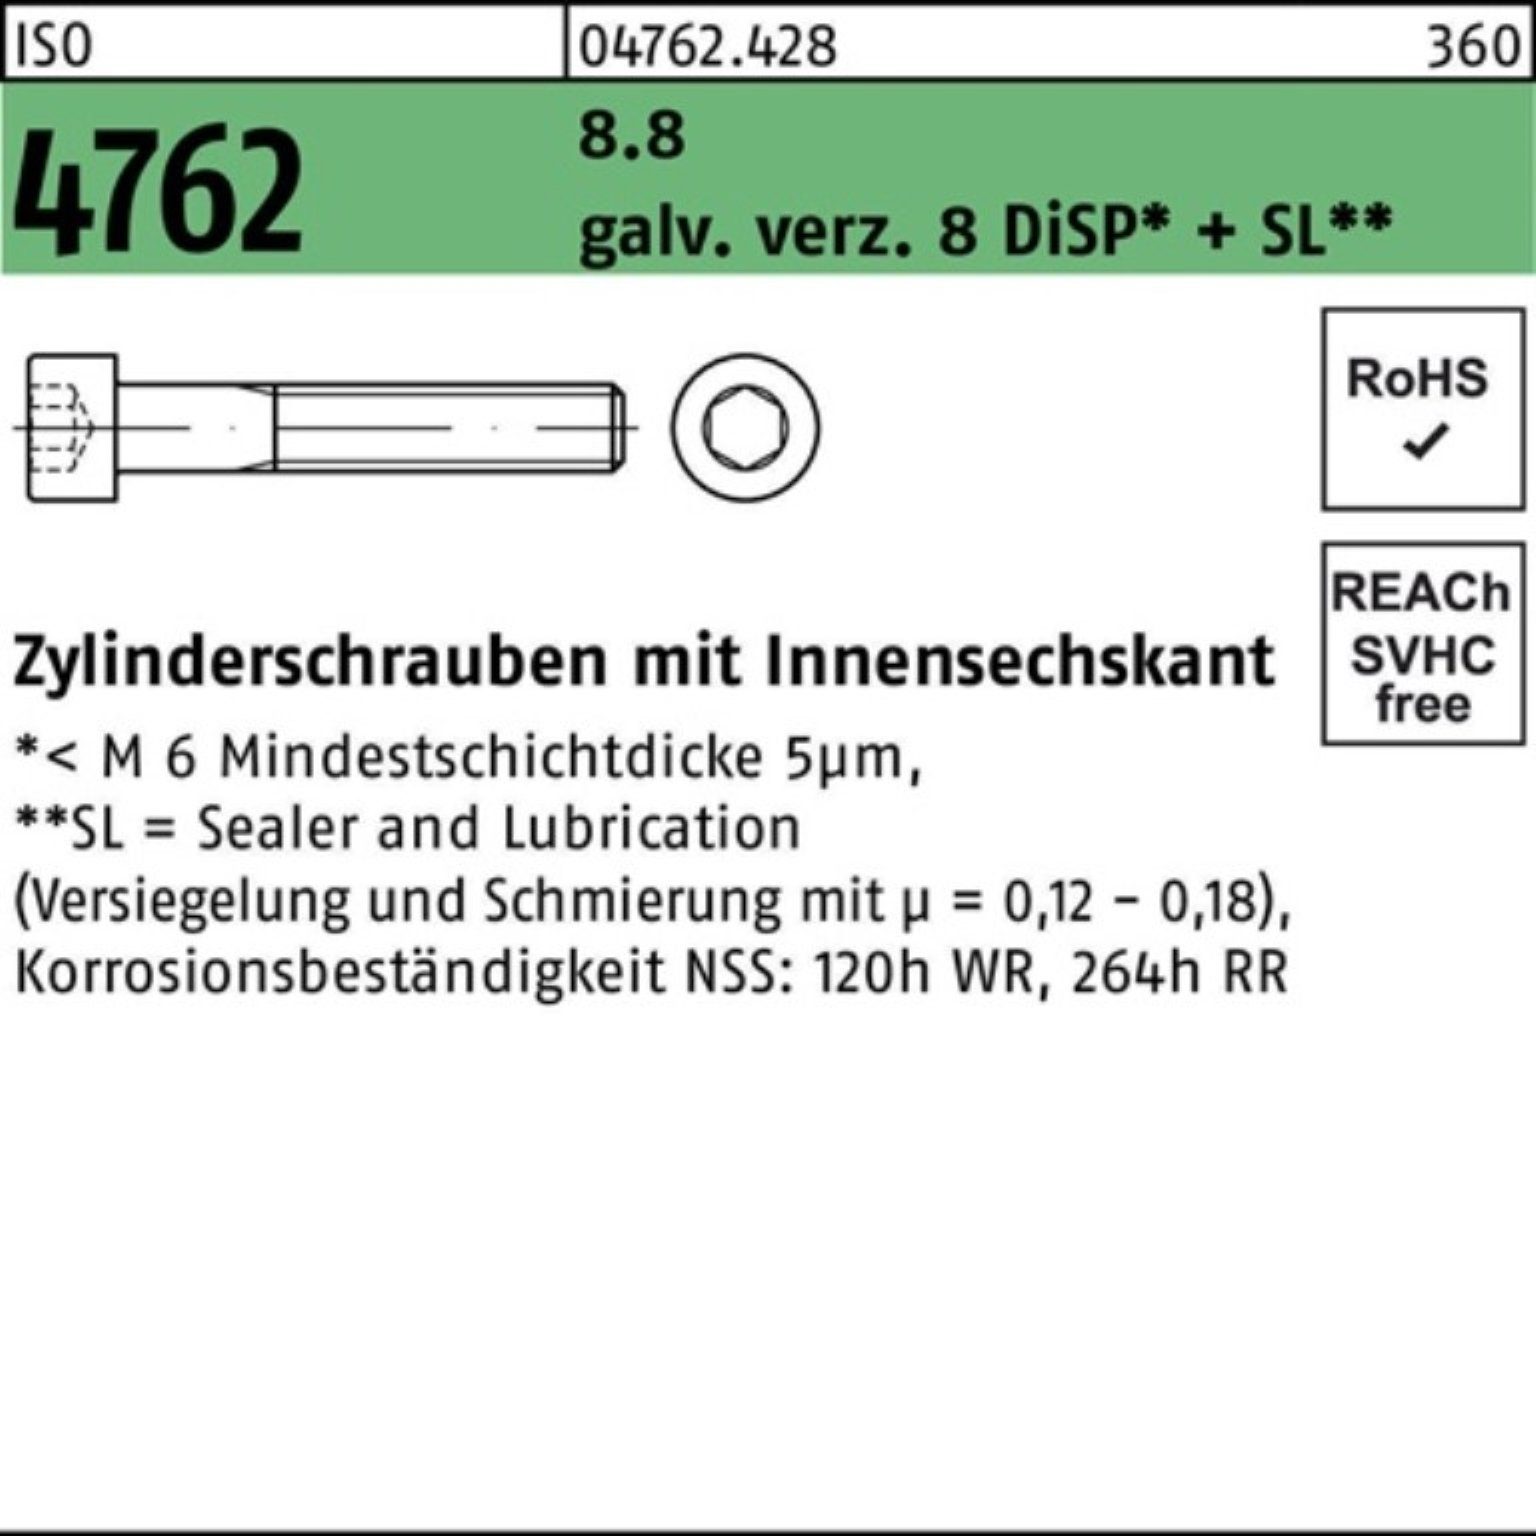 galv.verz. Pack 4762 Zylinderschraube Reyher 8.8 100er Zylinderschraube ISO Innen-6kt 8 M6x110